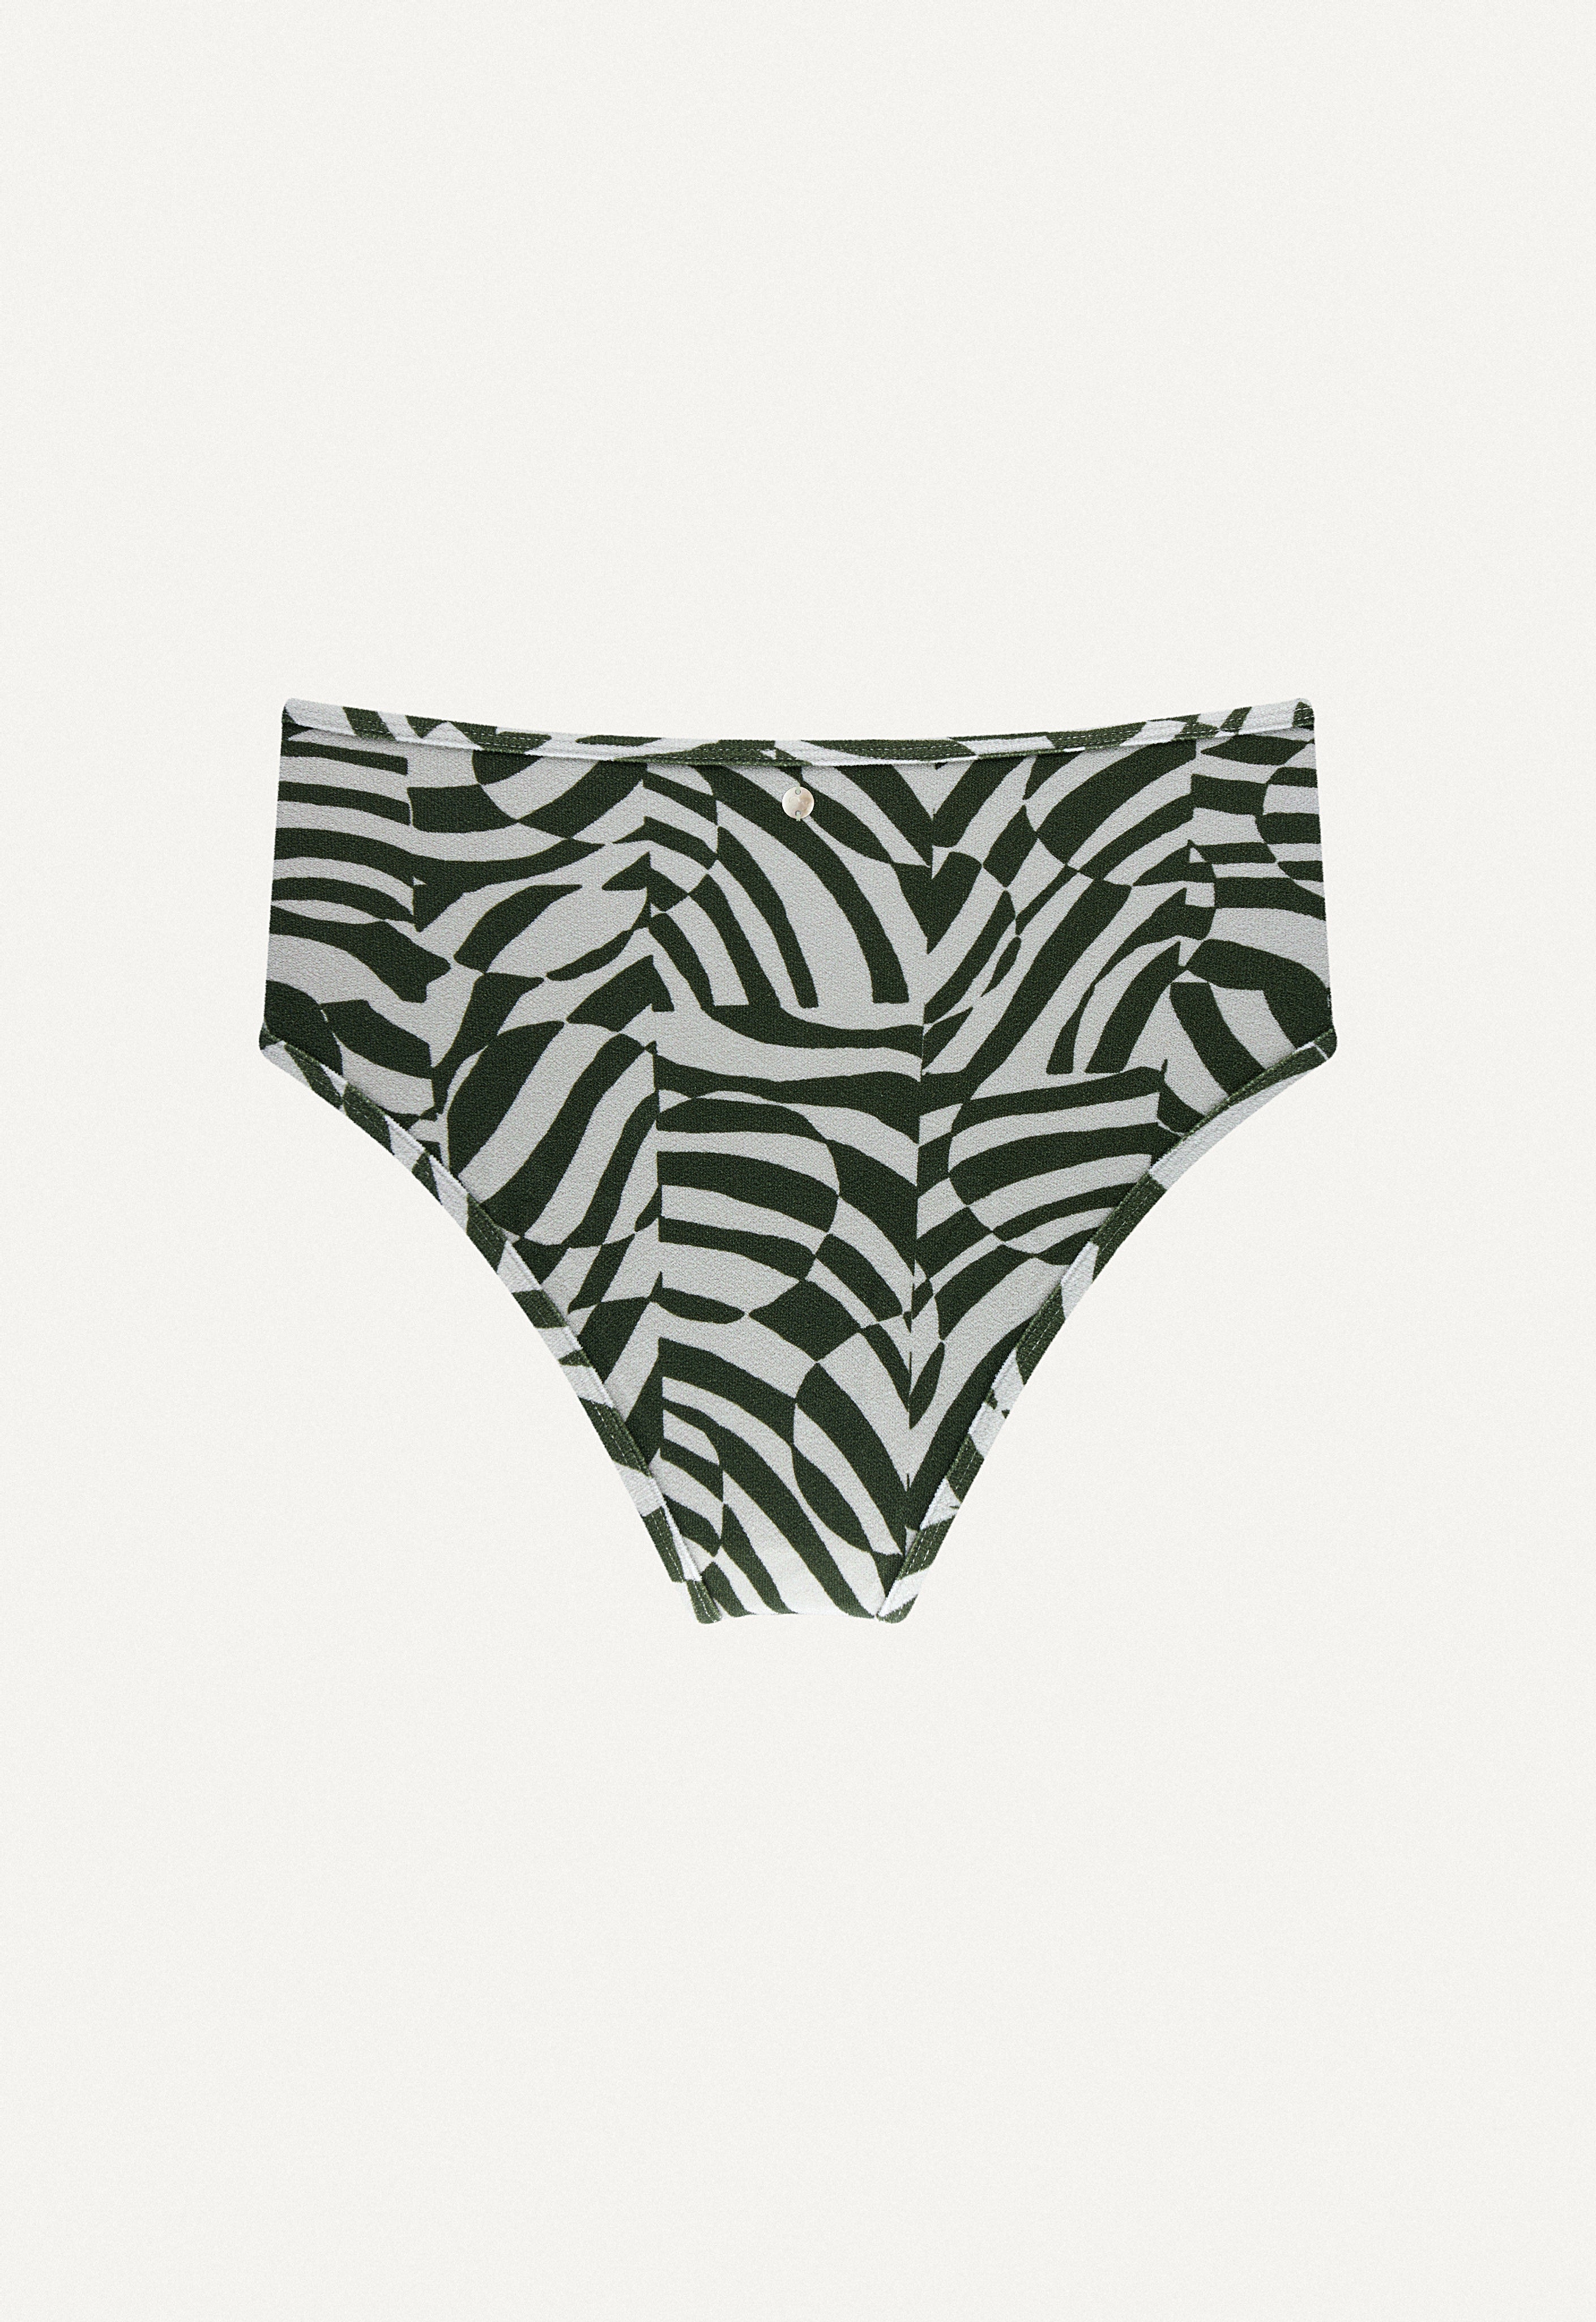 Oy-bikini-hose-A23-swimwear-Samun-zebra-print-frottee-back.jpg